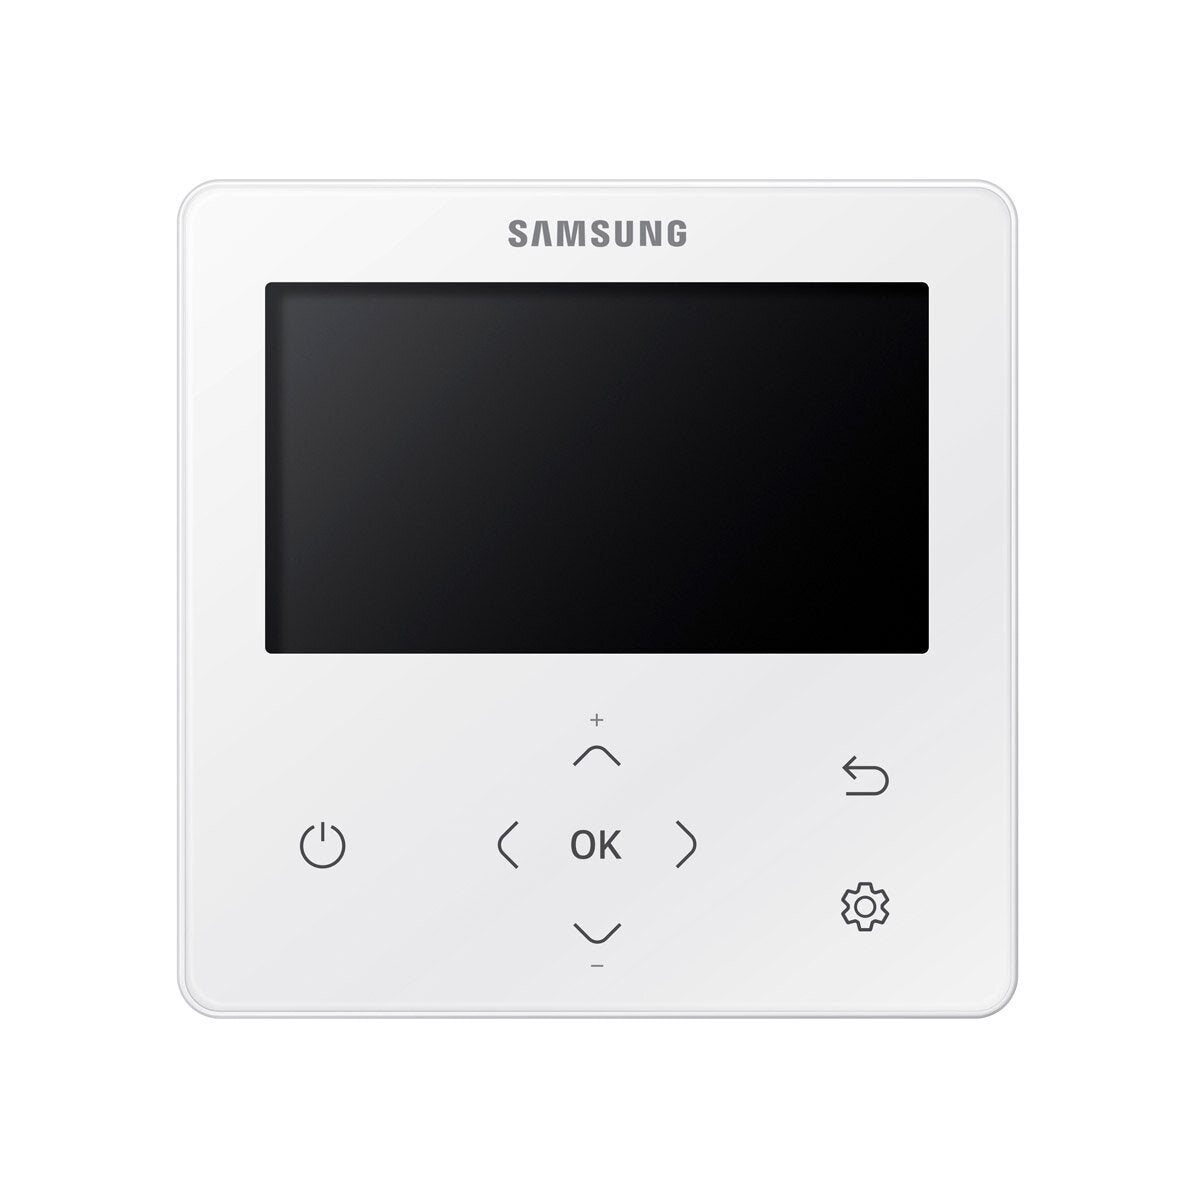 Samsung Klimaanlage Cassette Windfree 4 Wege Trial Split 7000 + 9000 + 9000 BTU Inverter A+++ Außengerät 5,2 kW